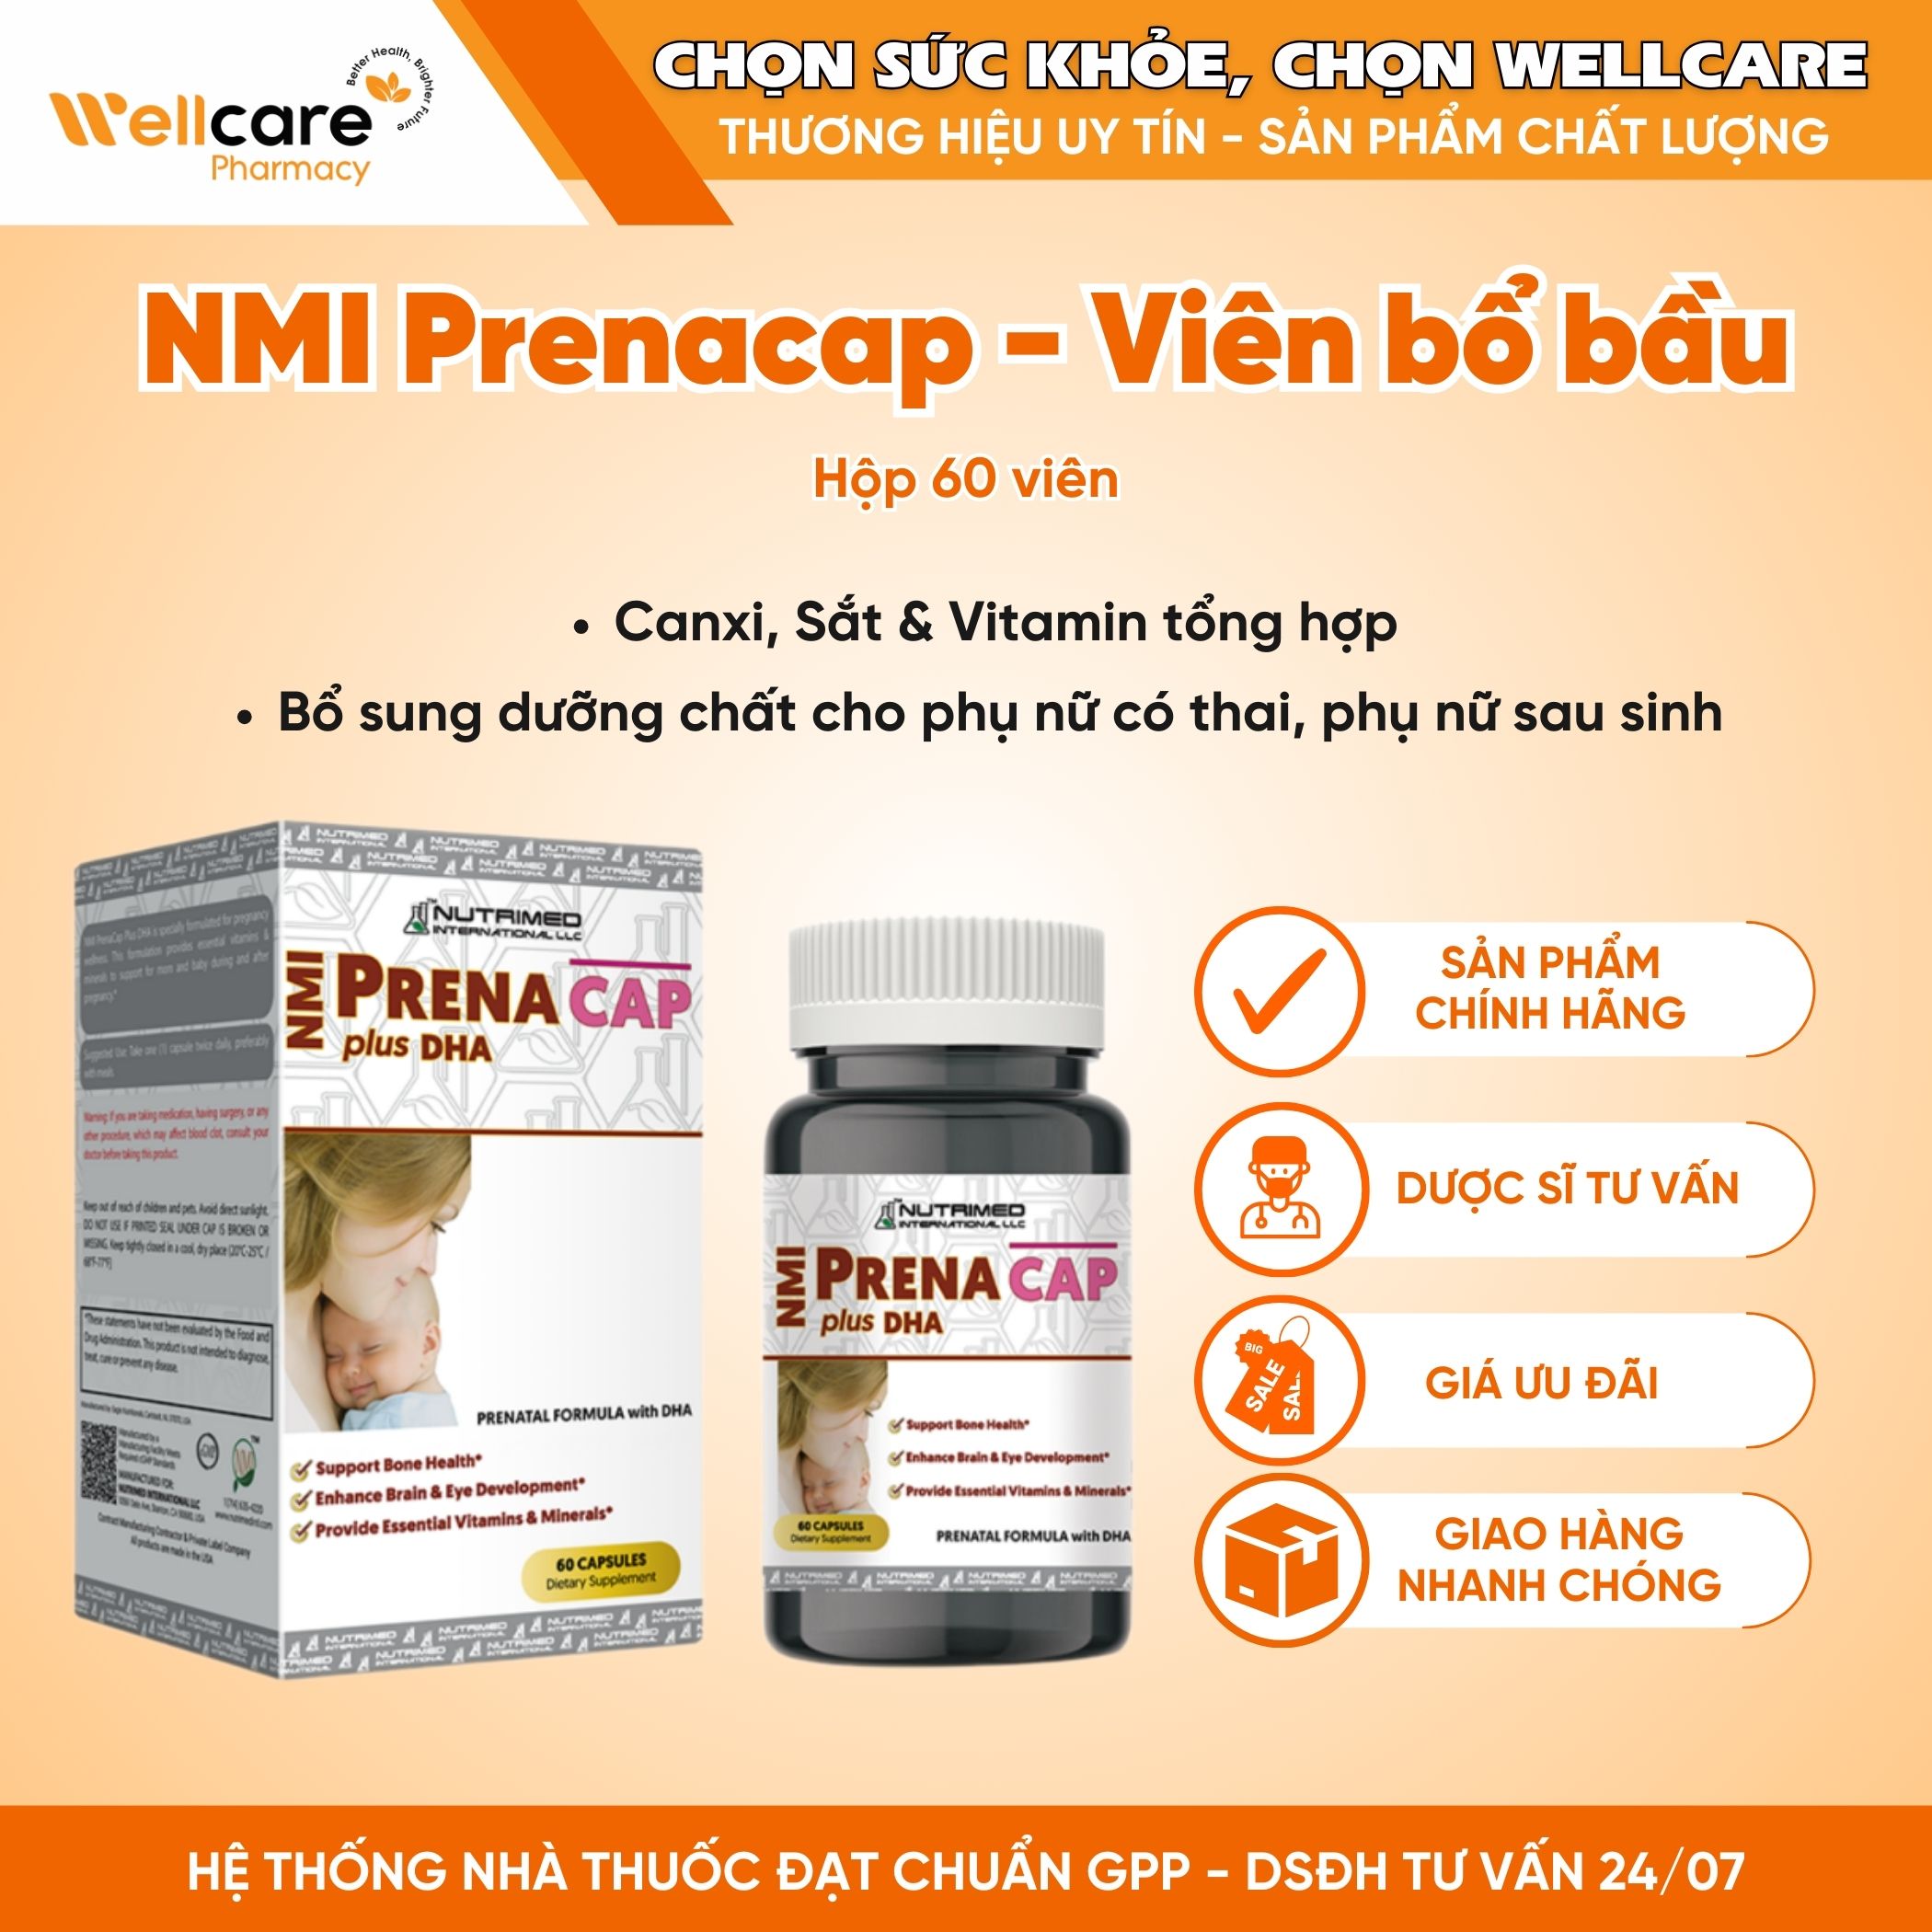 NMI Prenacap Plus DHA – Viên Uống Hỗ Trợ Bổ Sung Vitamin Và Khoáng Chất Cho Phụ Nữ Mang Thai Và Sau Sinh (Hộp 60 Viên)